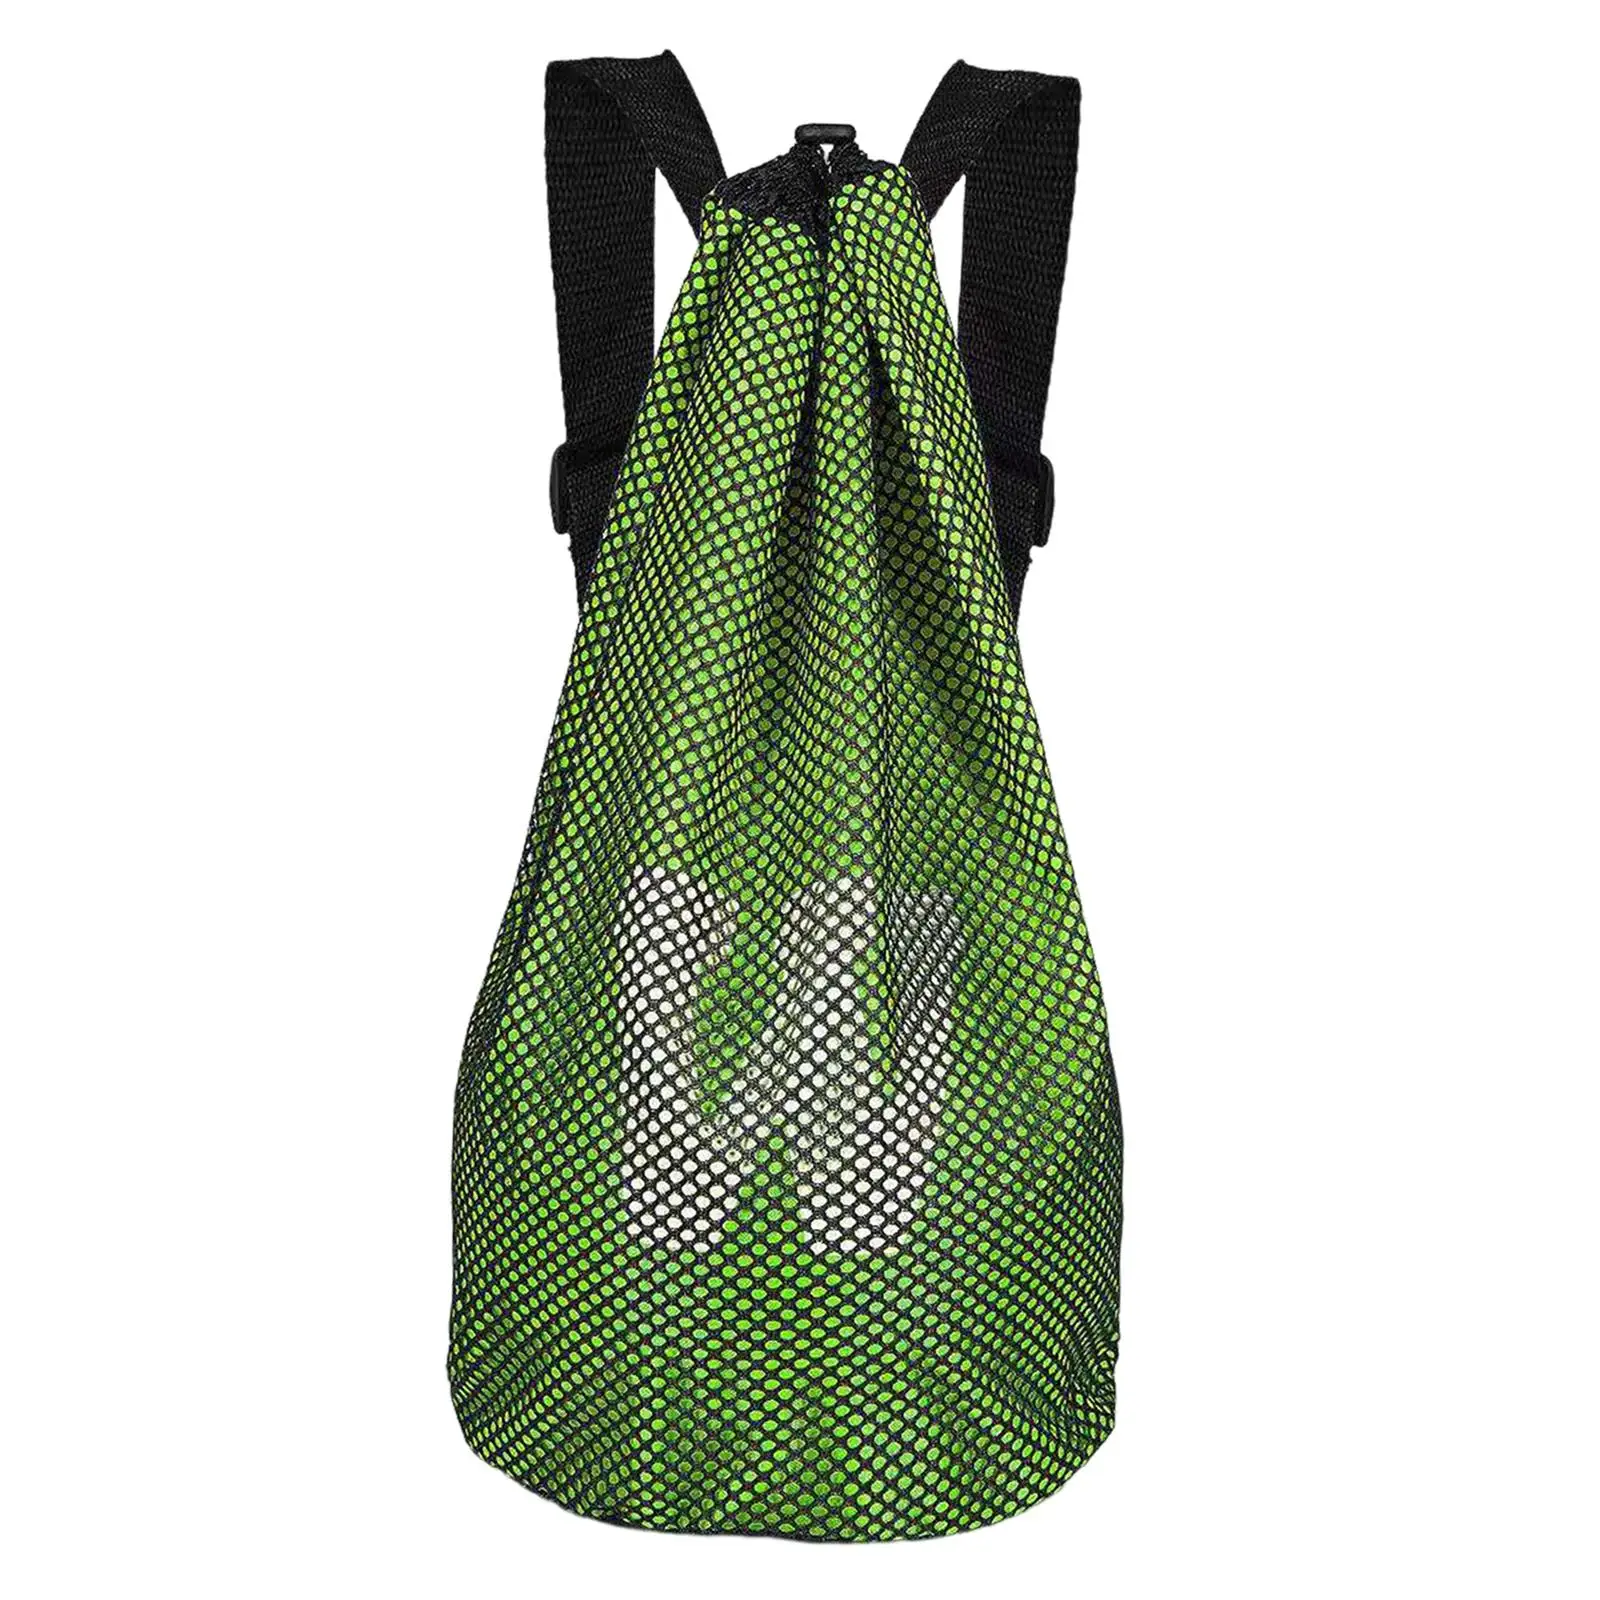 Sports Gym Bag with Adjustable Shoulder Strap Lightweight Storage Bag Organizer Mesh Backpack for Soccer Volleyball